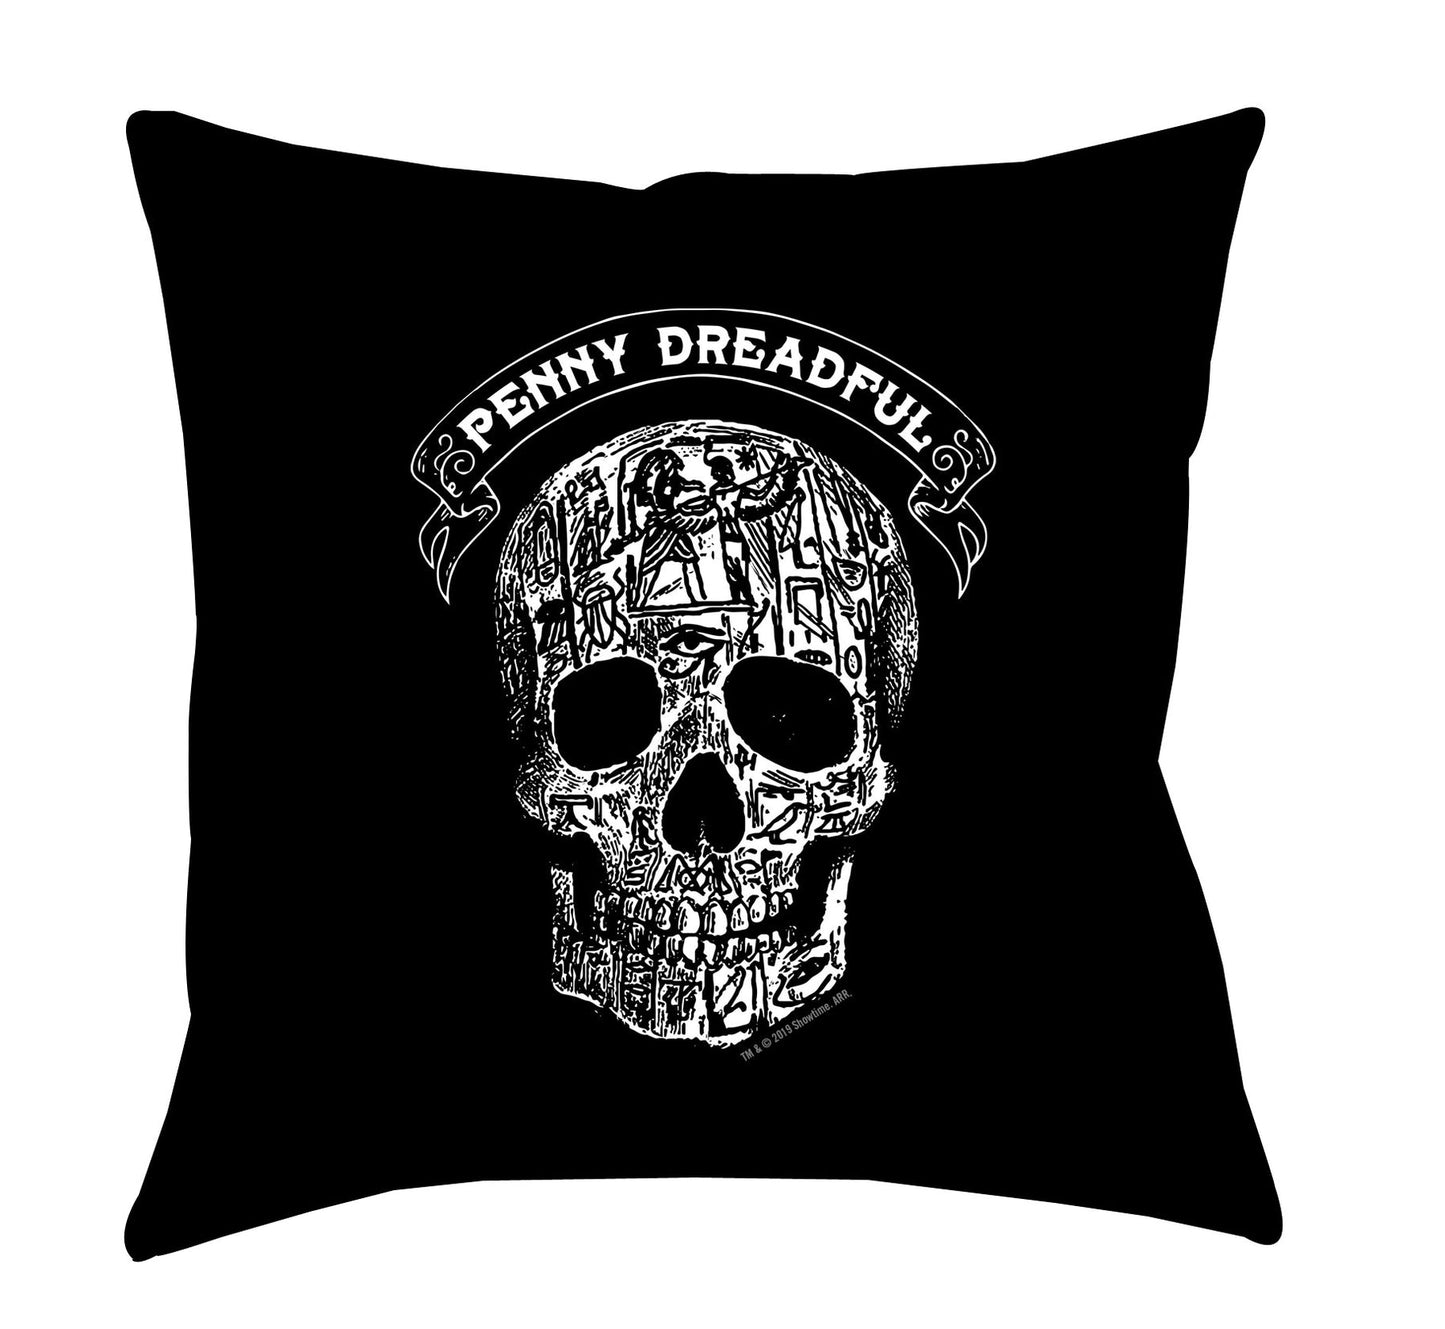 Penny Dreadful Line Art Skull Throw Pillow - 16" x 16" (oreiller en forme de crâne)